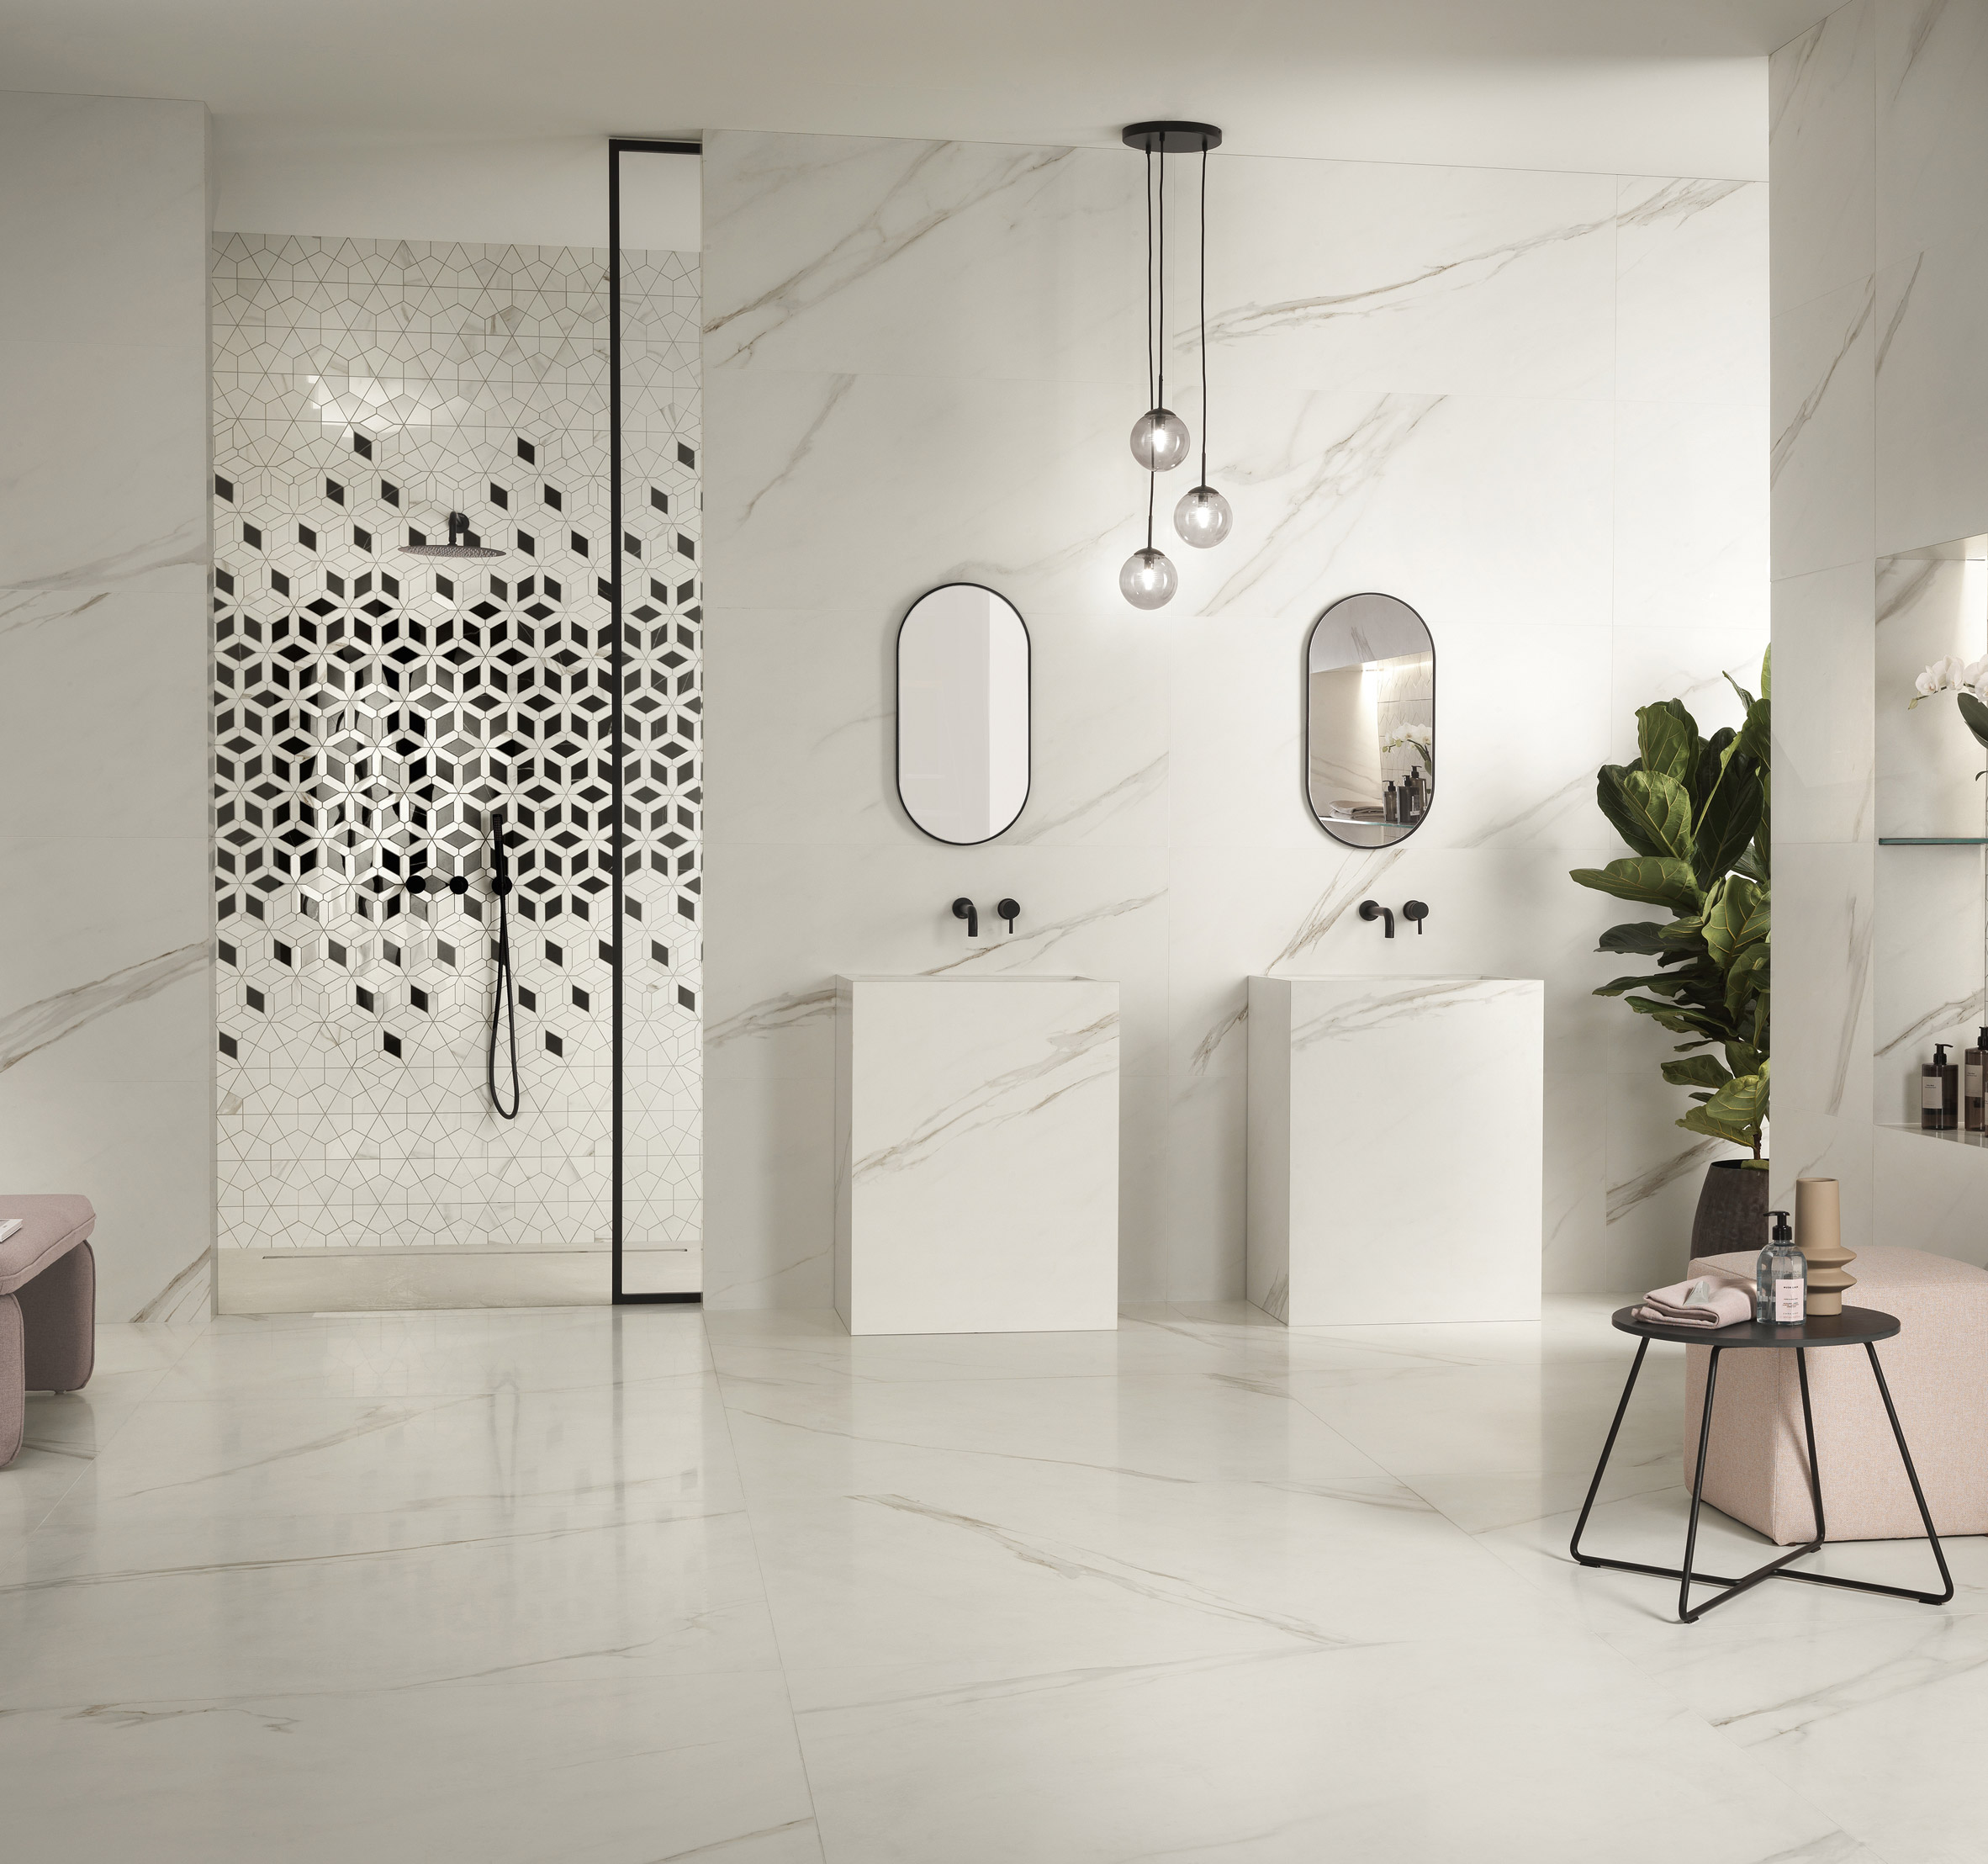 Diamond Décor tiles by Zaha Hadid featured in a bathroom